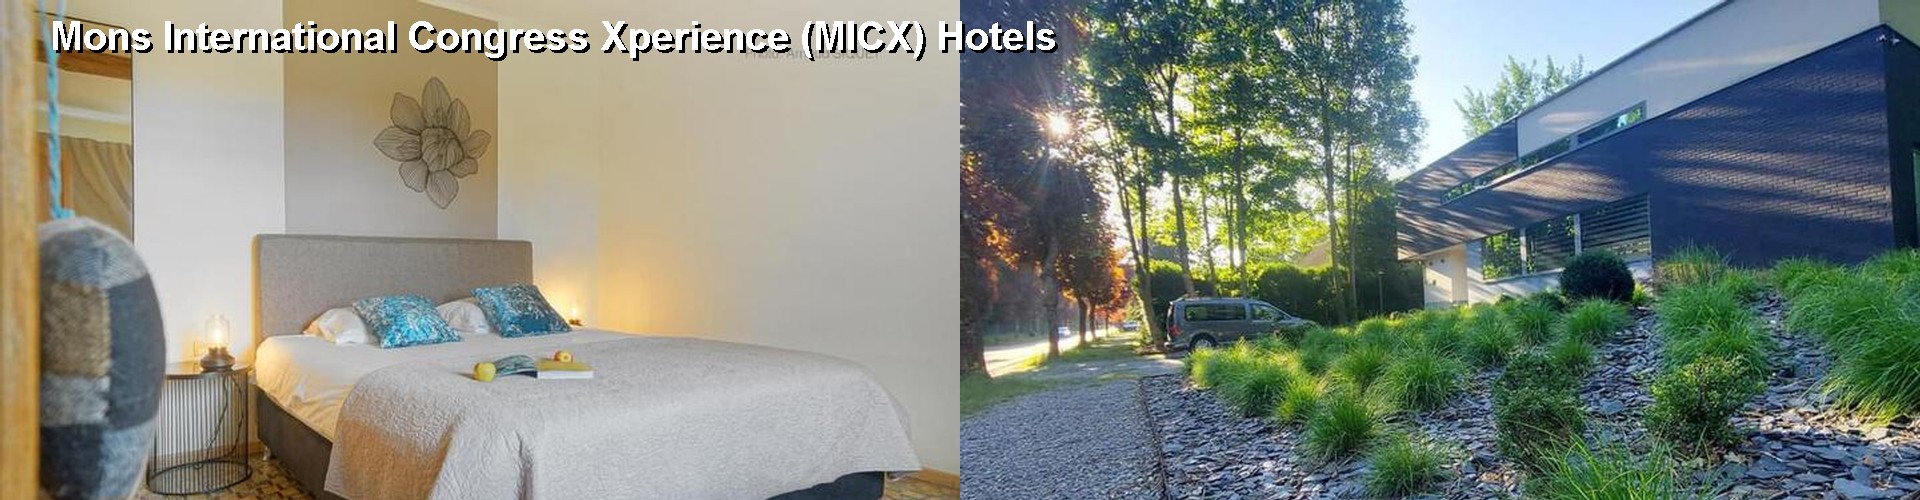 5 Best Hotels near Mons International Congress Xperience (MICX)